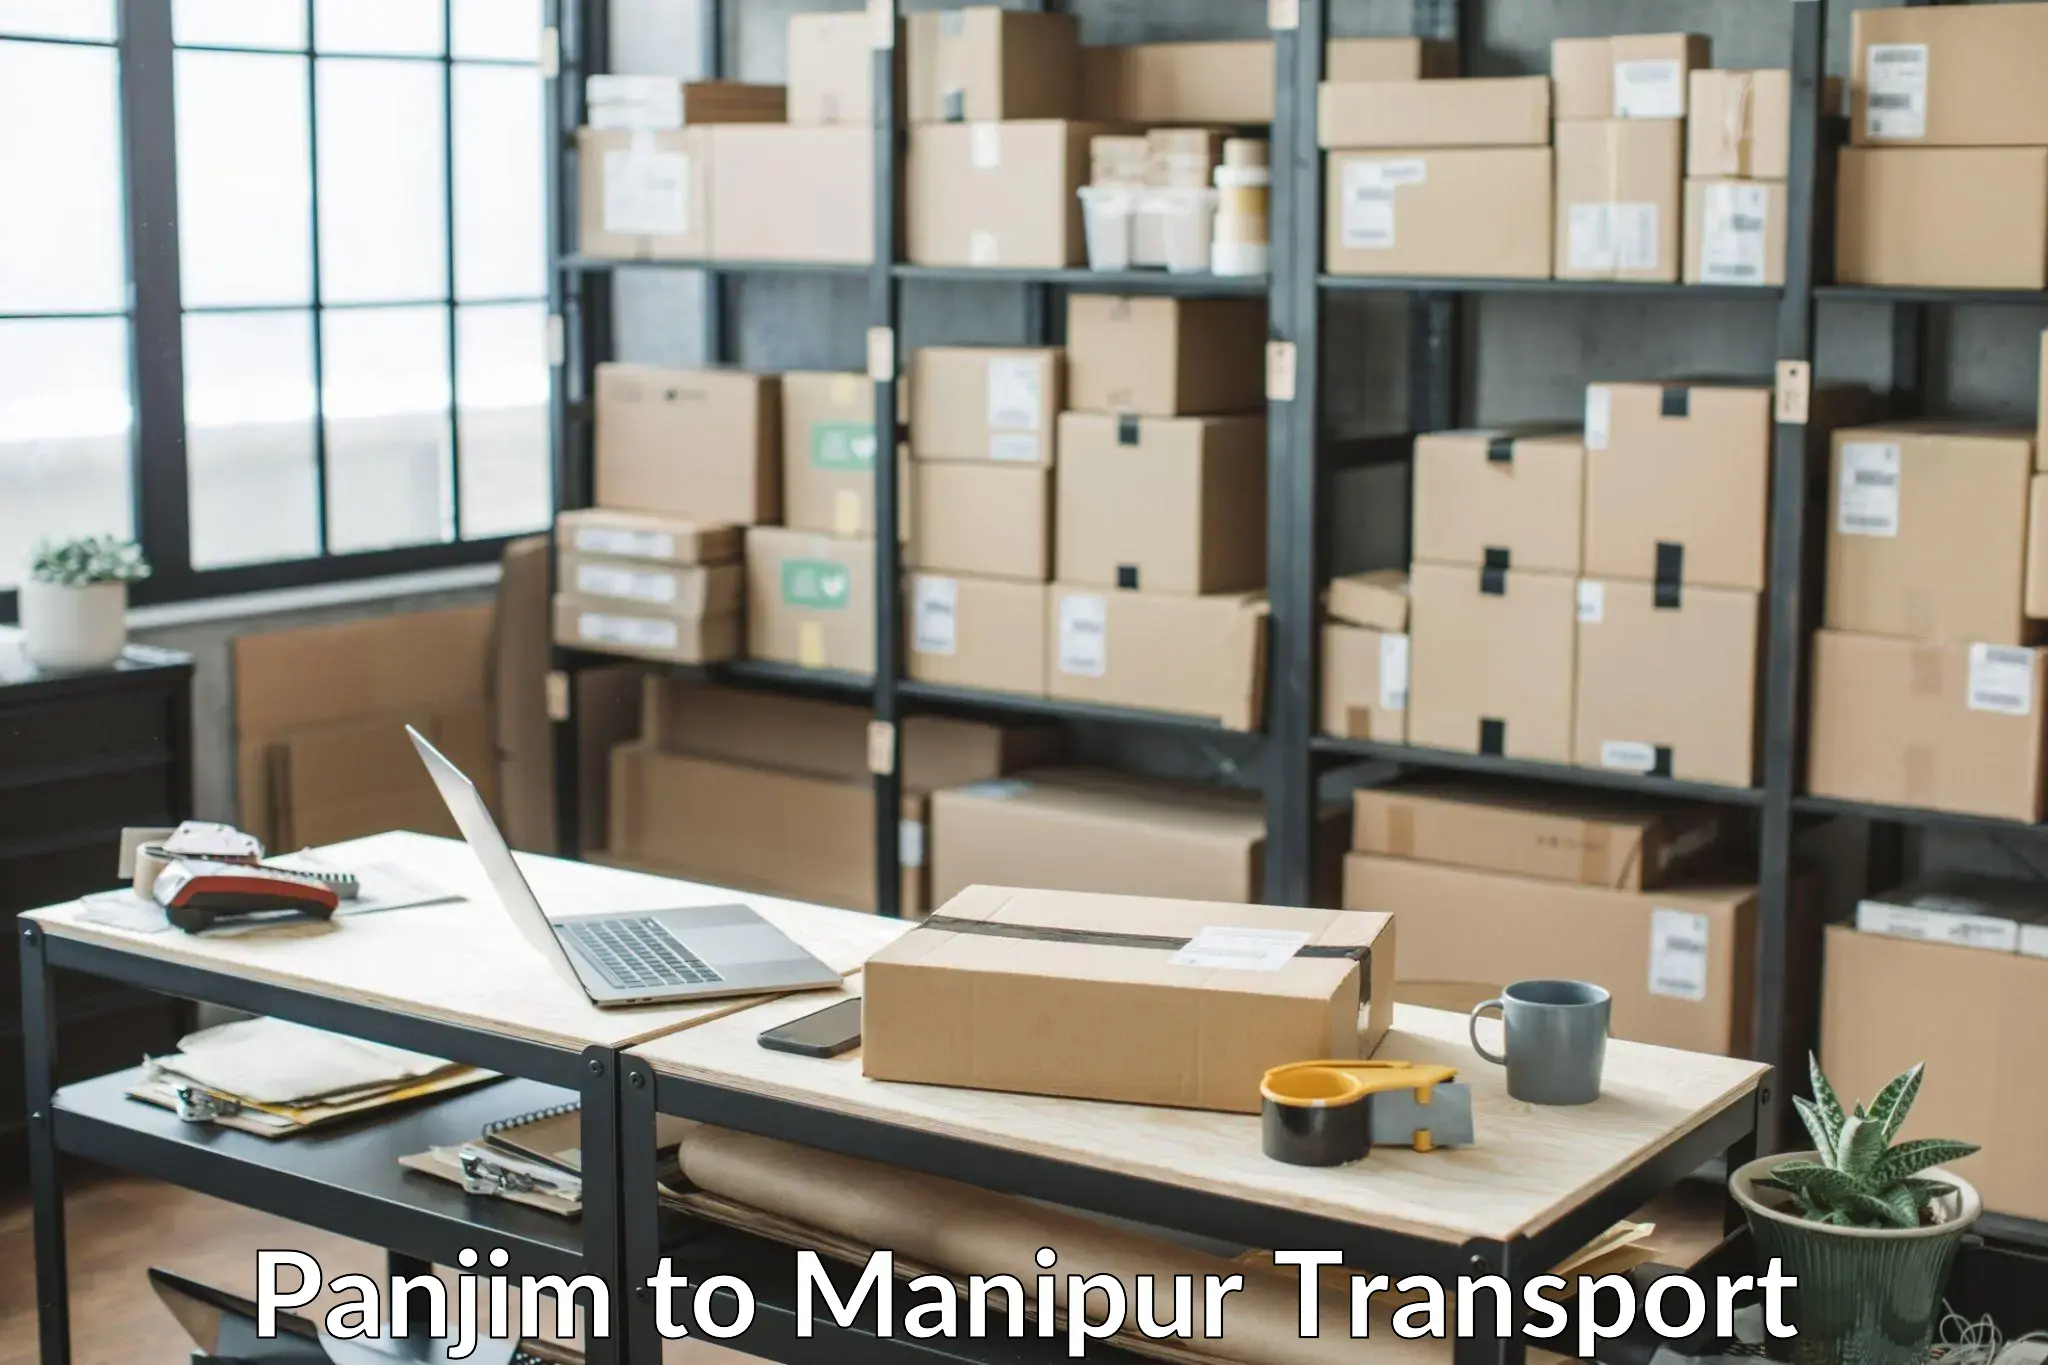 Land transport services in Panjim to Kaptipada